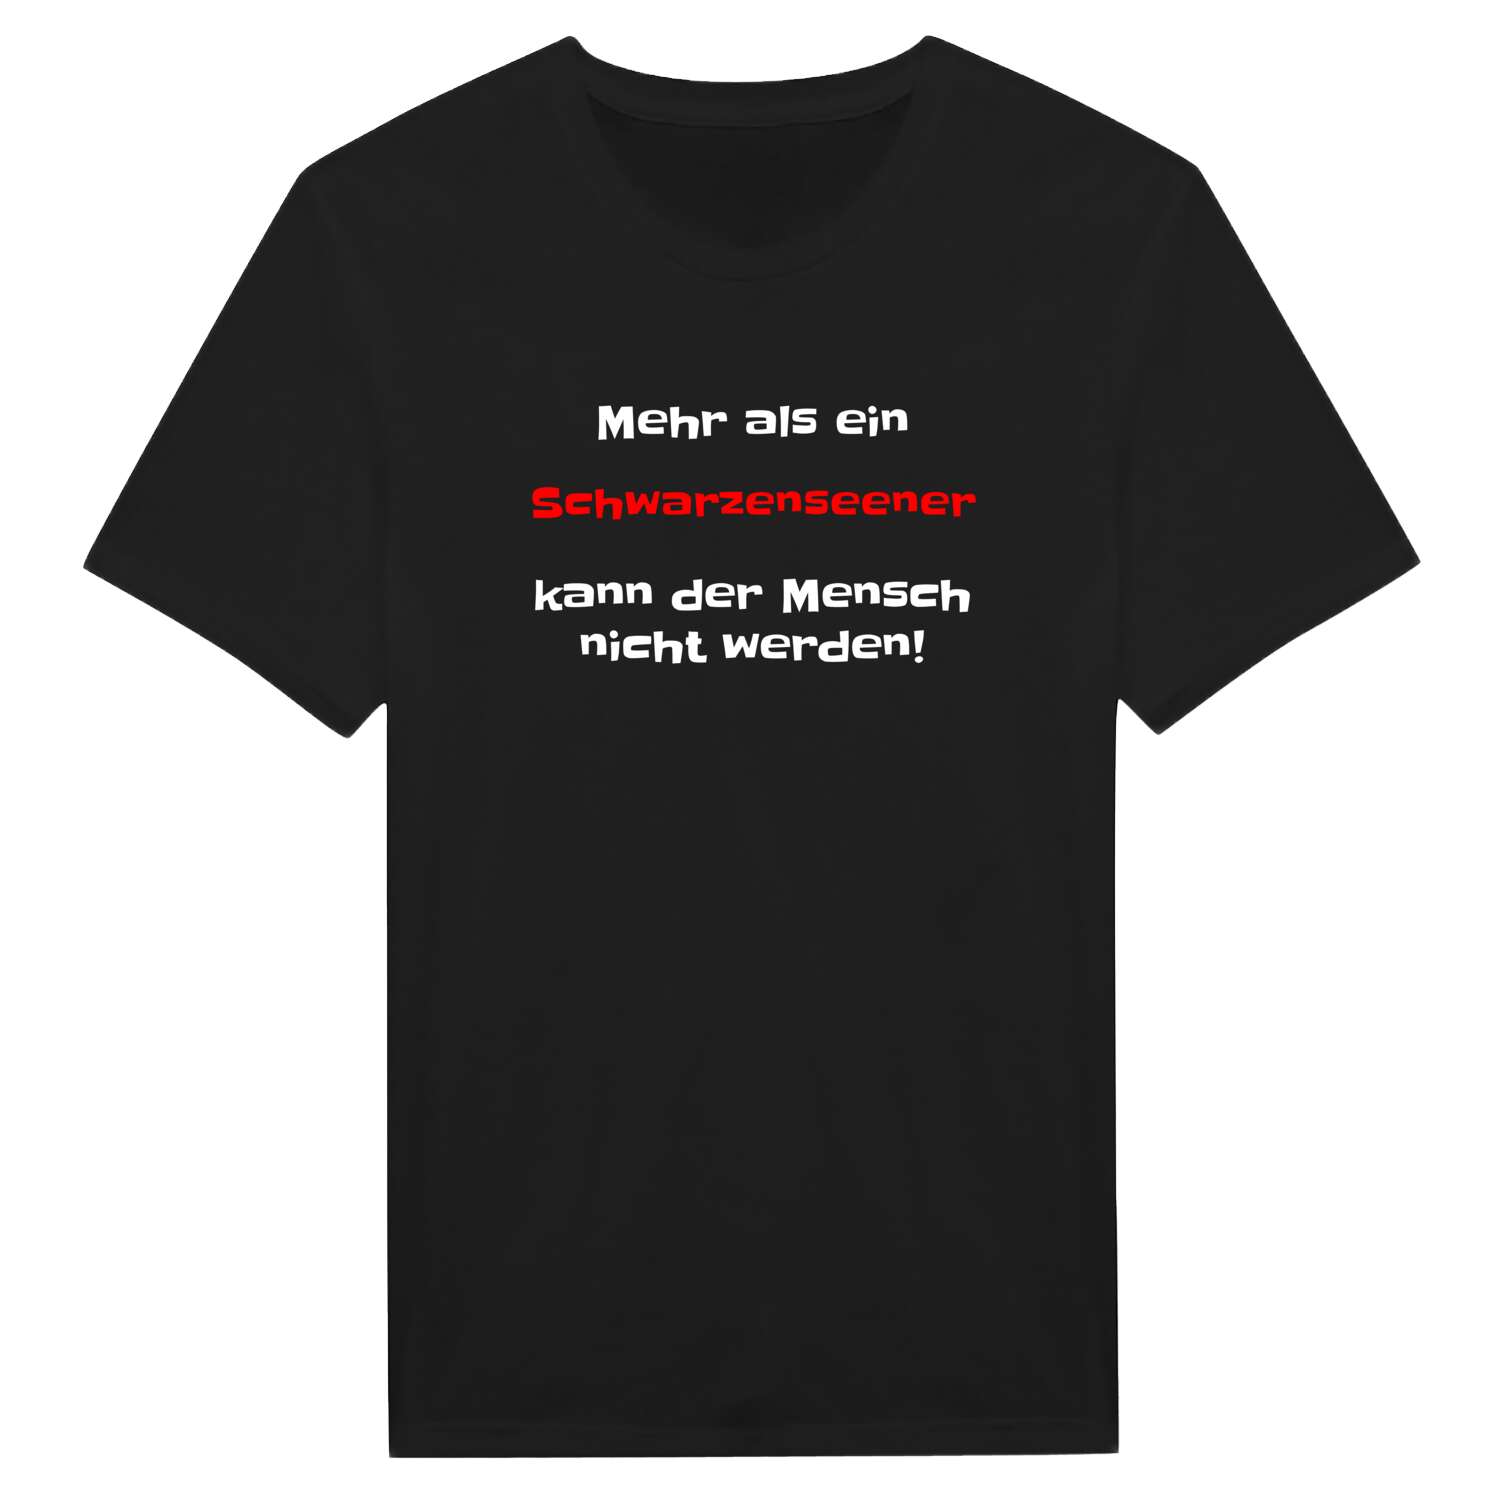 Schwarzensee T-Shirt »Mehr als ein«